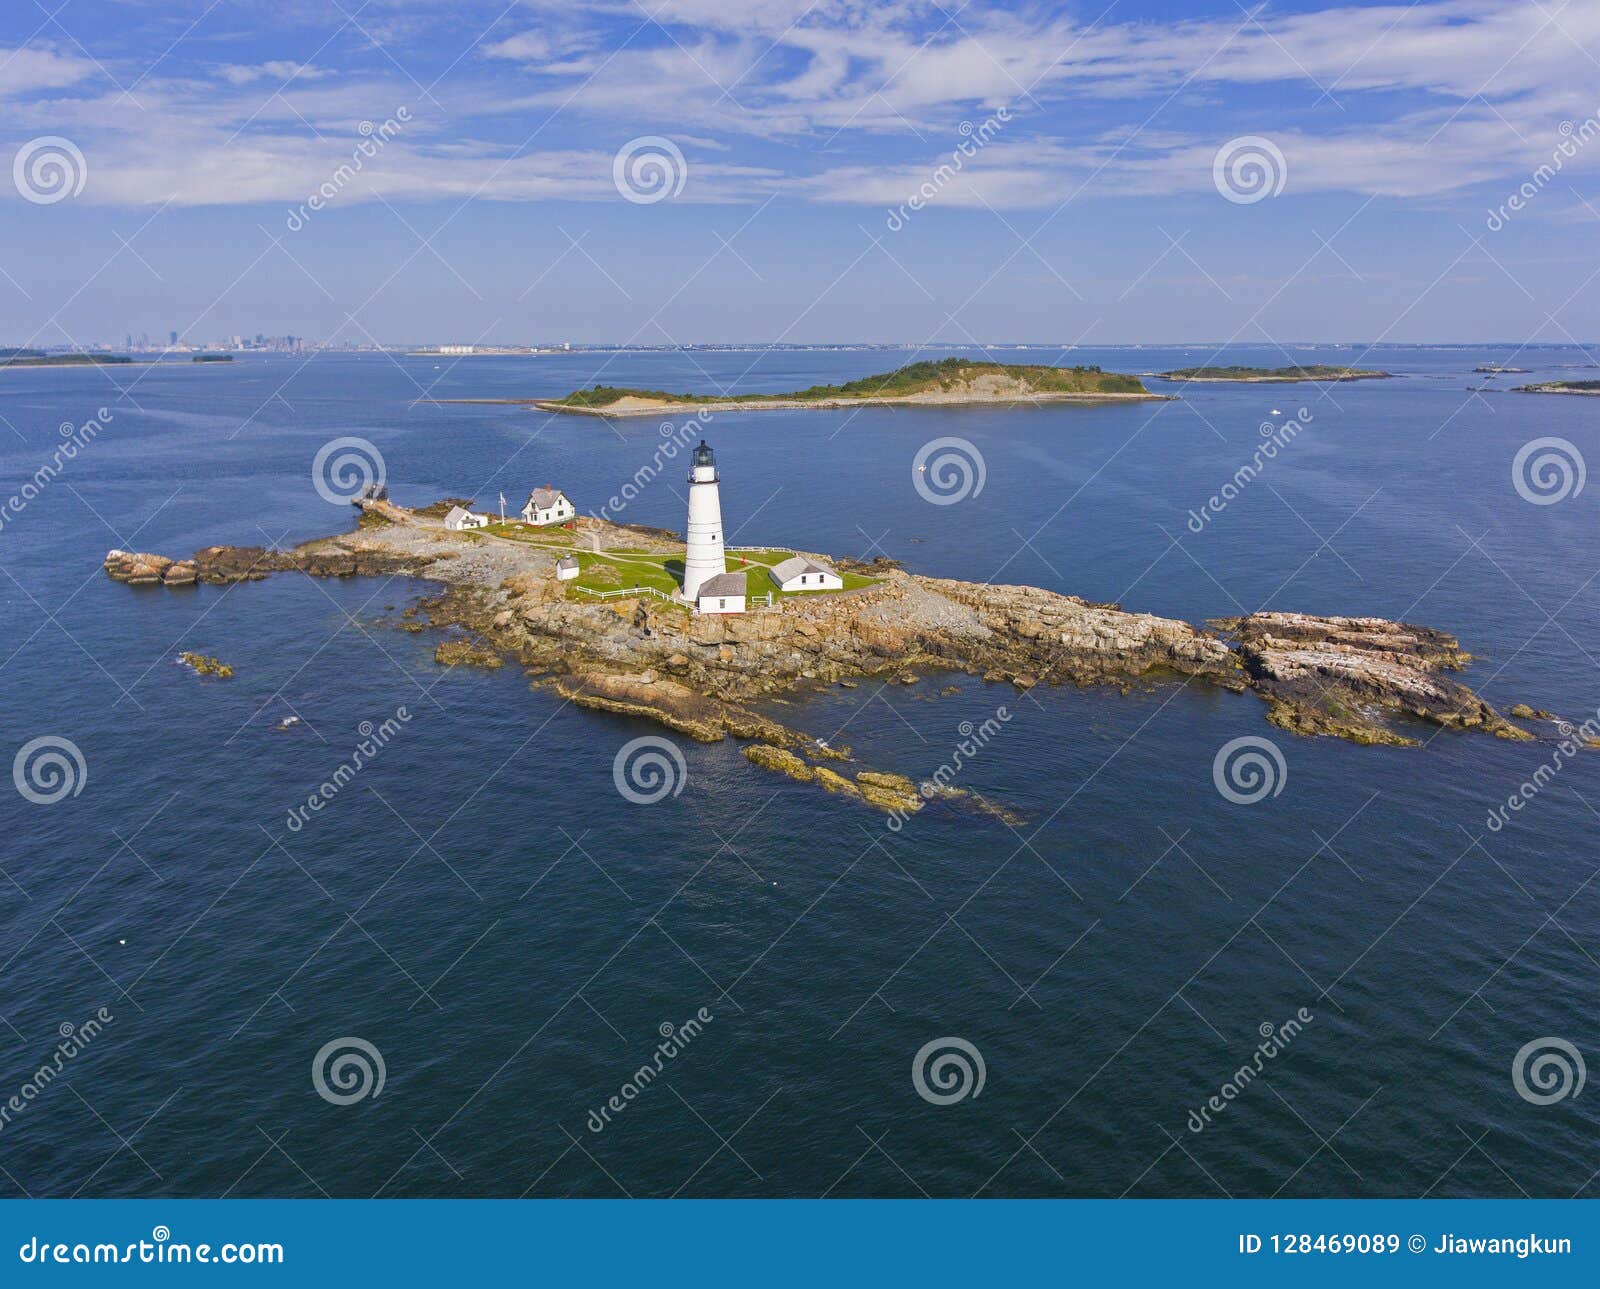 boston lighthouse in boston harbor, massachusetts, usa